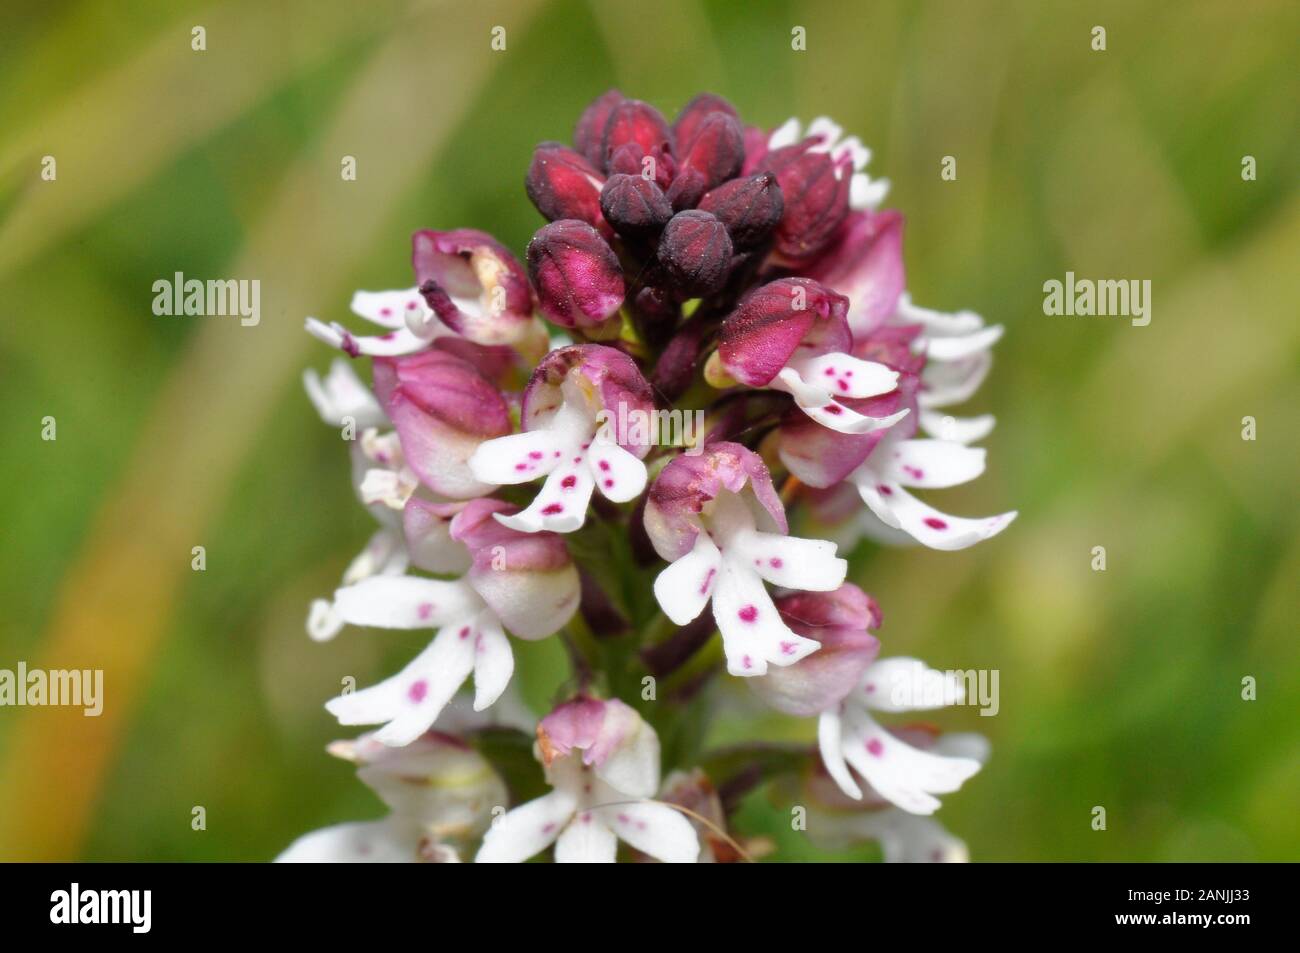 Neotinea ustulata 'Orchidée brûlée' trouvé sur d'anciennes prairies calcaires, court,.forme précoce,fleurs de mai à juin. Wiltshire, Royaume-Uni. Banque D'Images